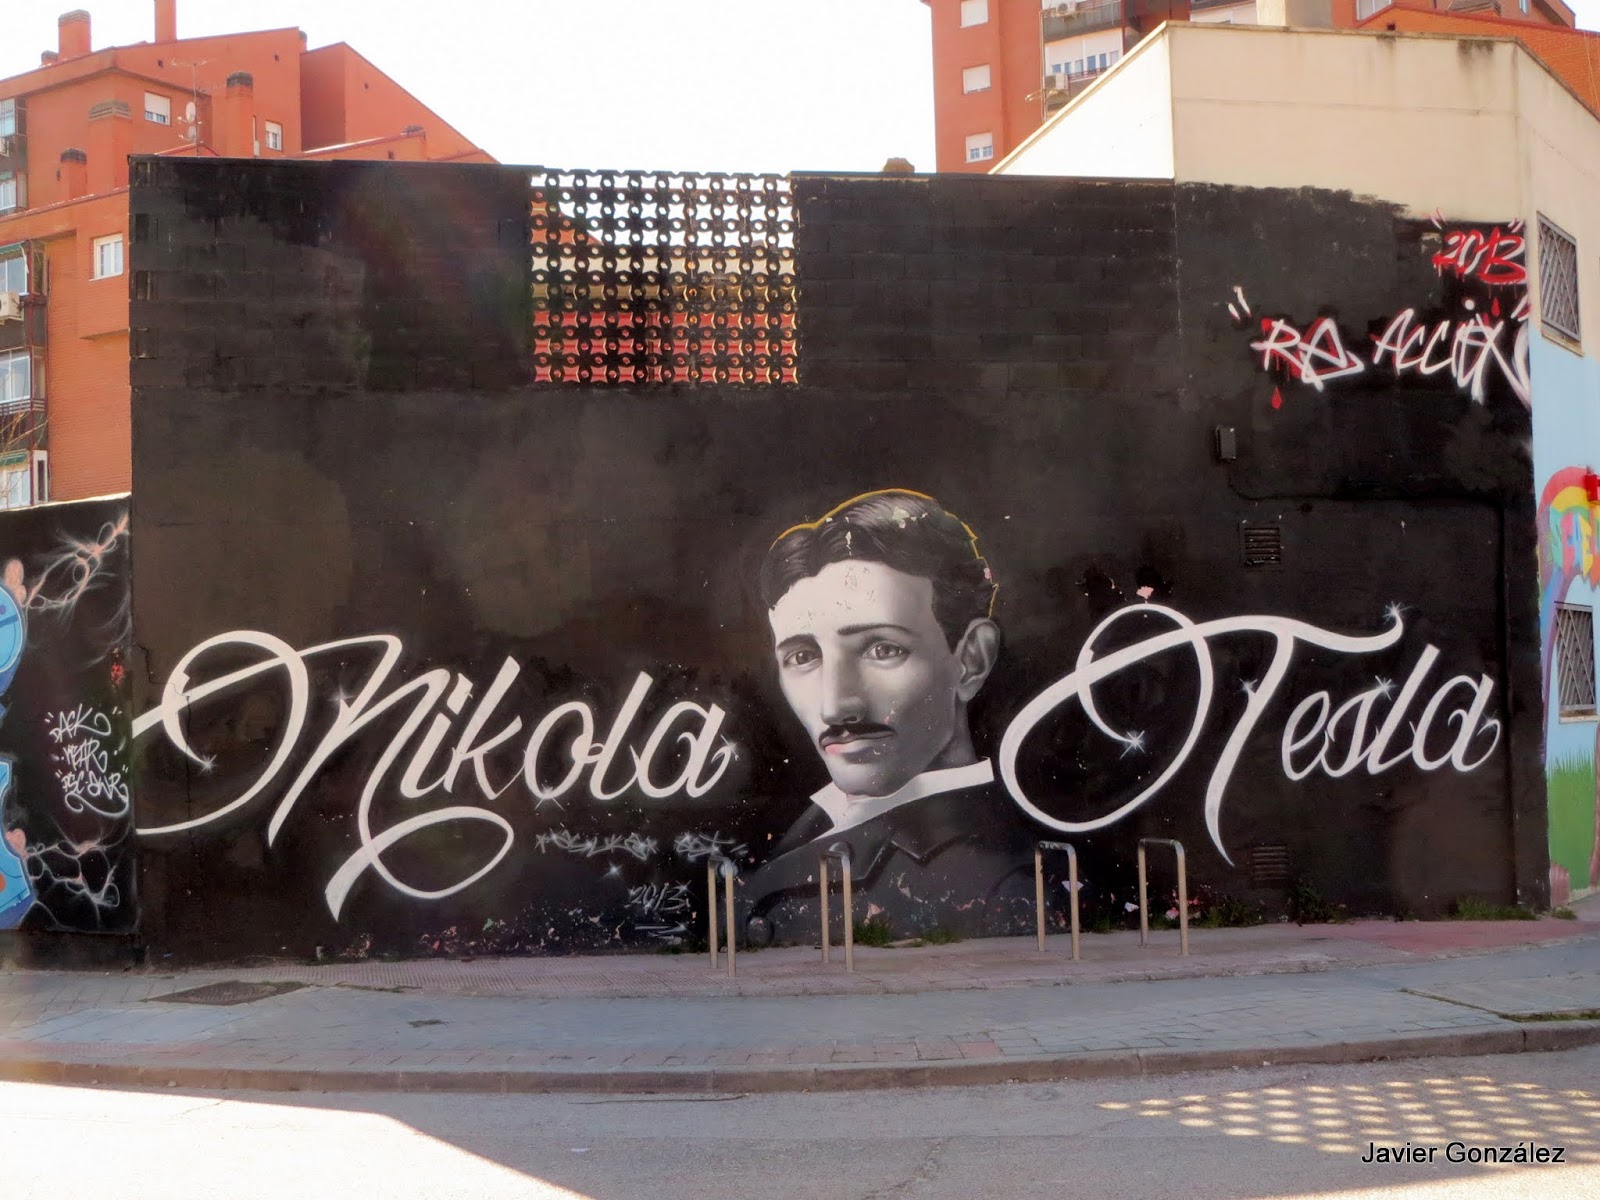 Nikola Tesla. inventor, ingeniero mecánico, ingeniero eléctrico, físico, corriente continua, corriente alterna, AC, DC, CA, CC